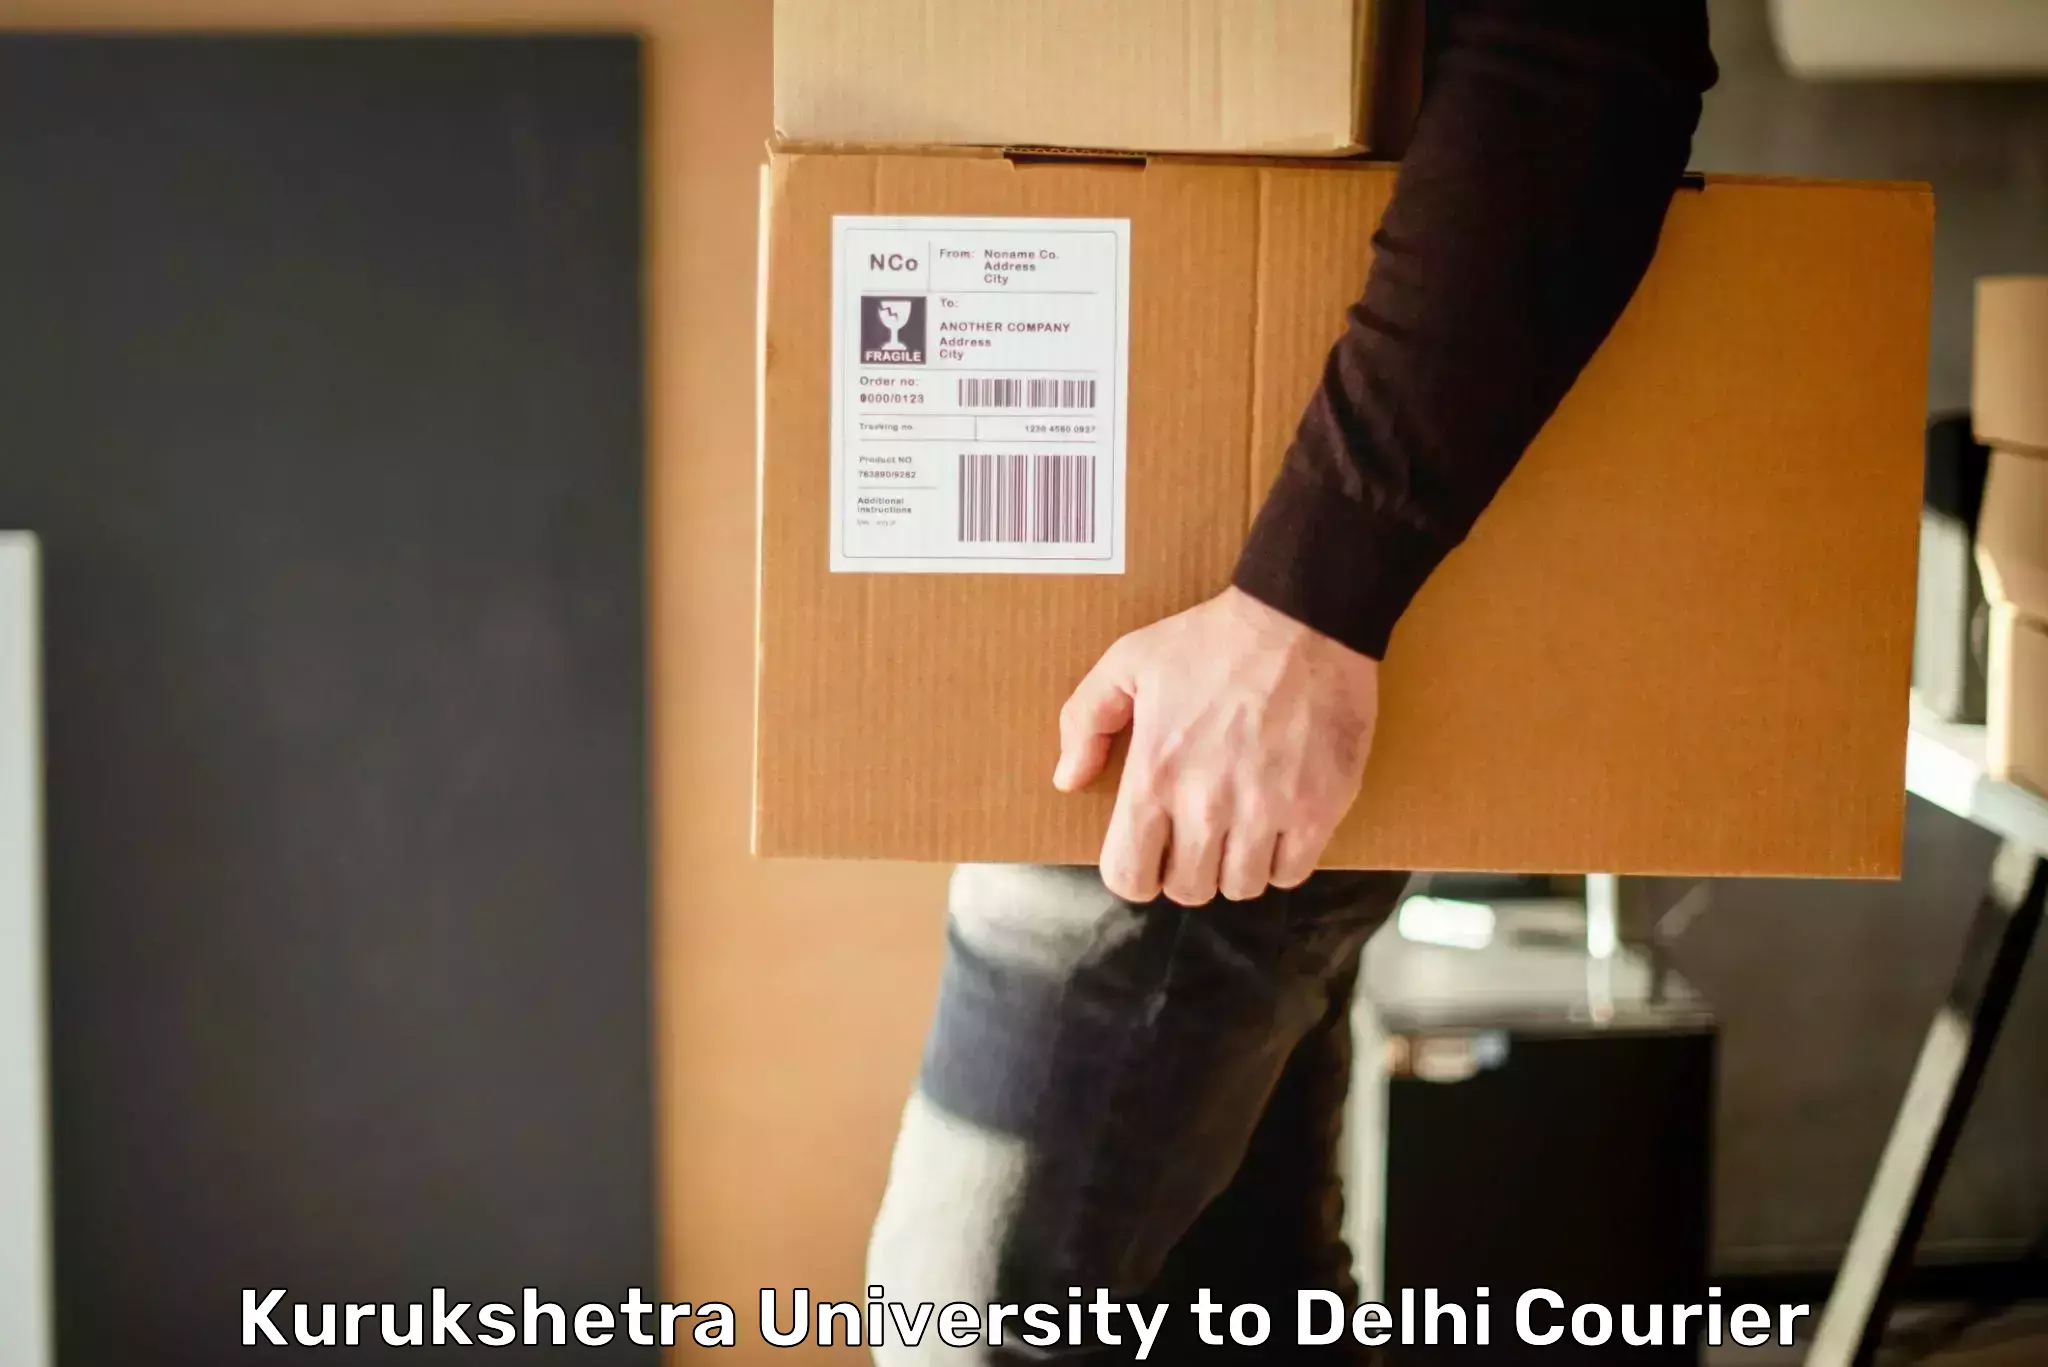 Nationwide shipping services Kurukshetra University to Burari